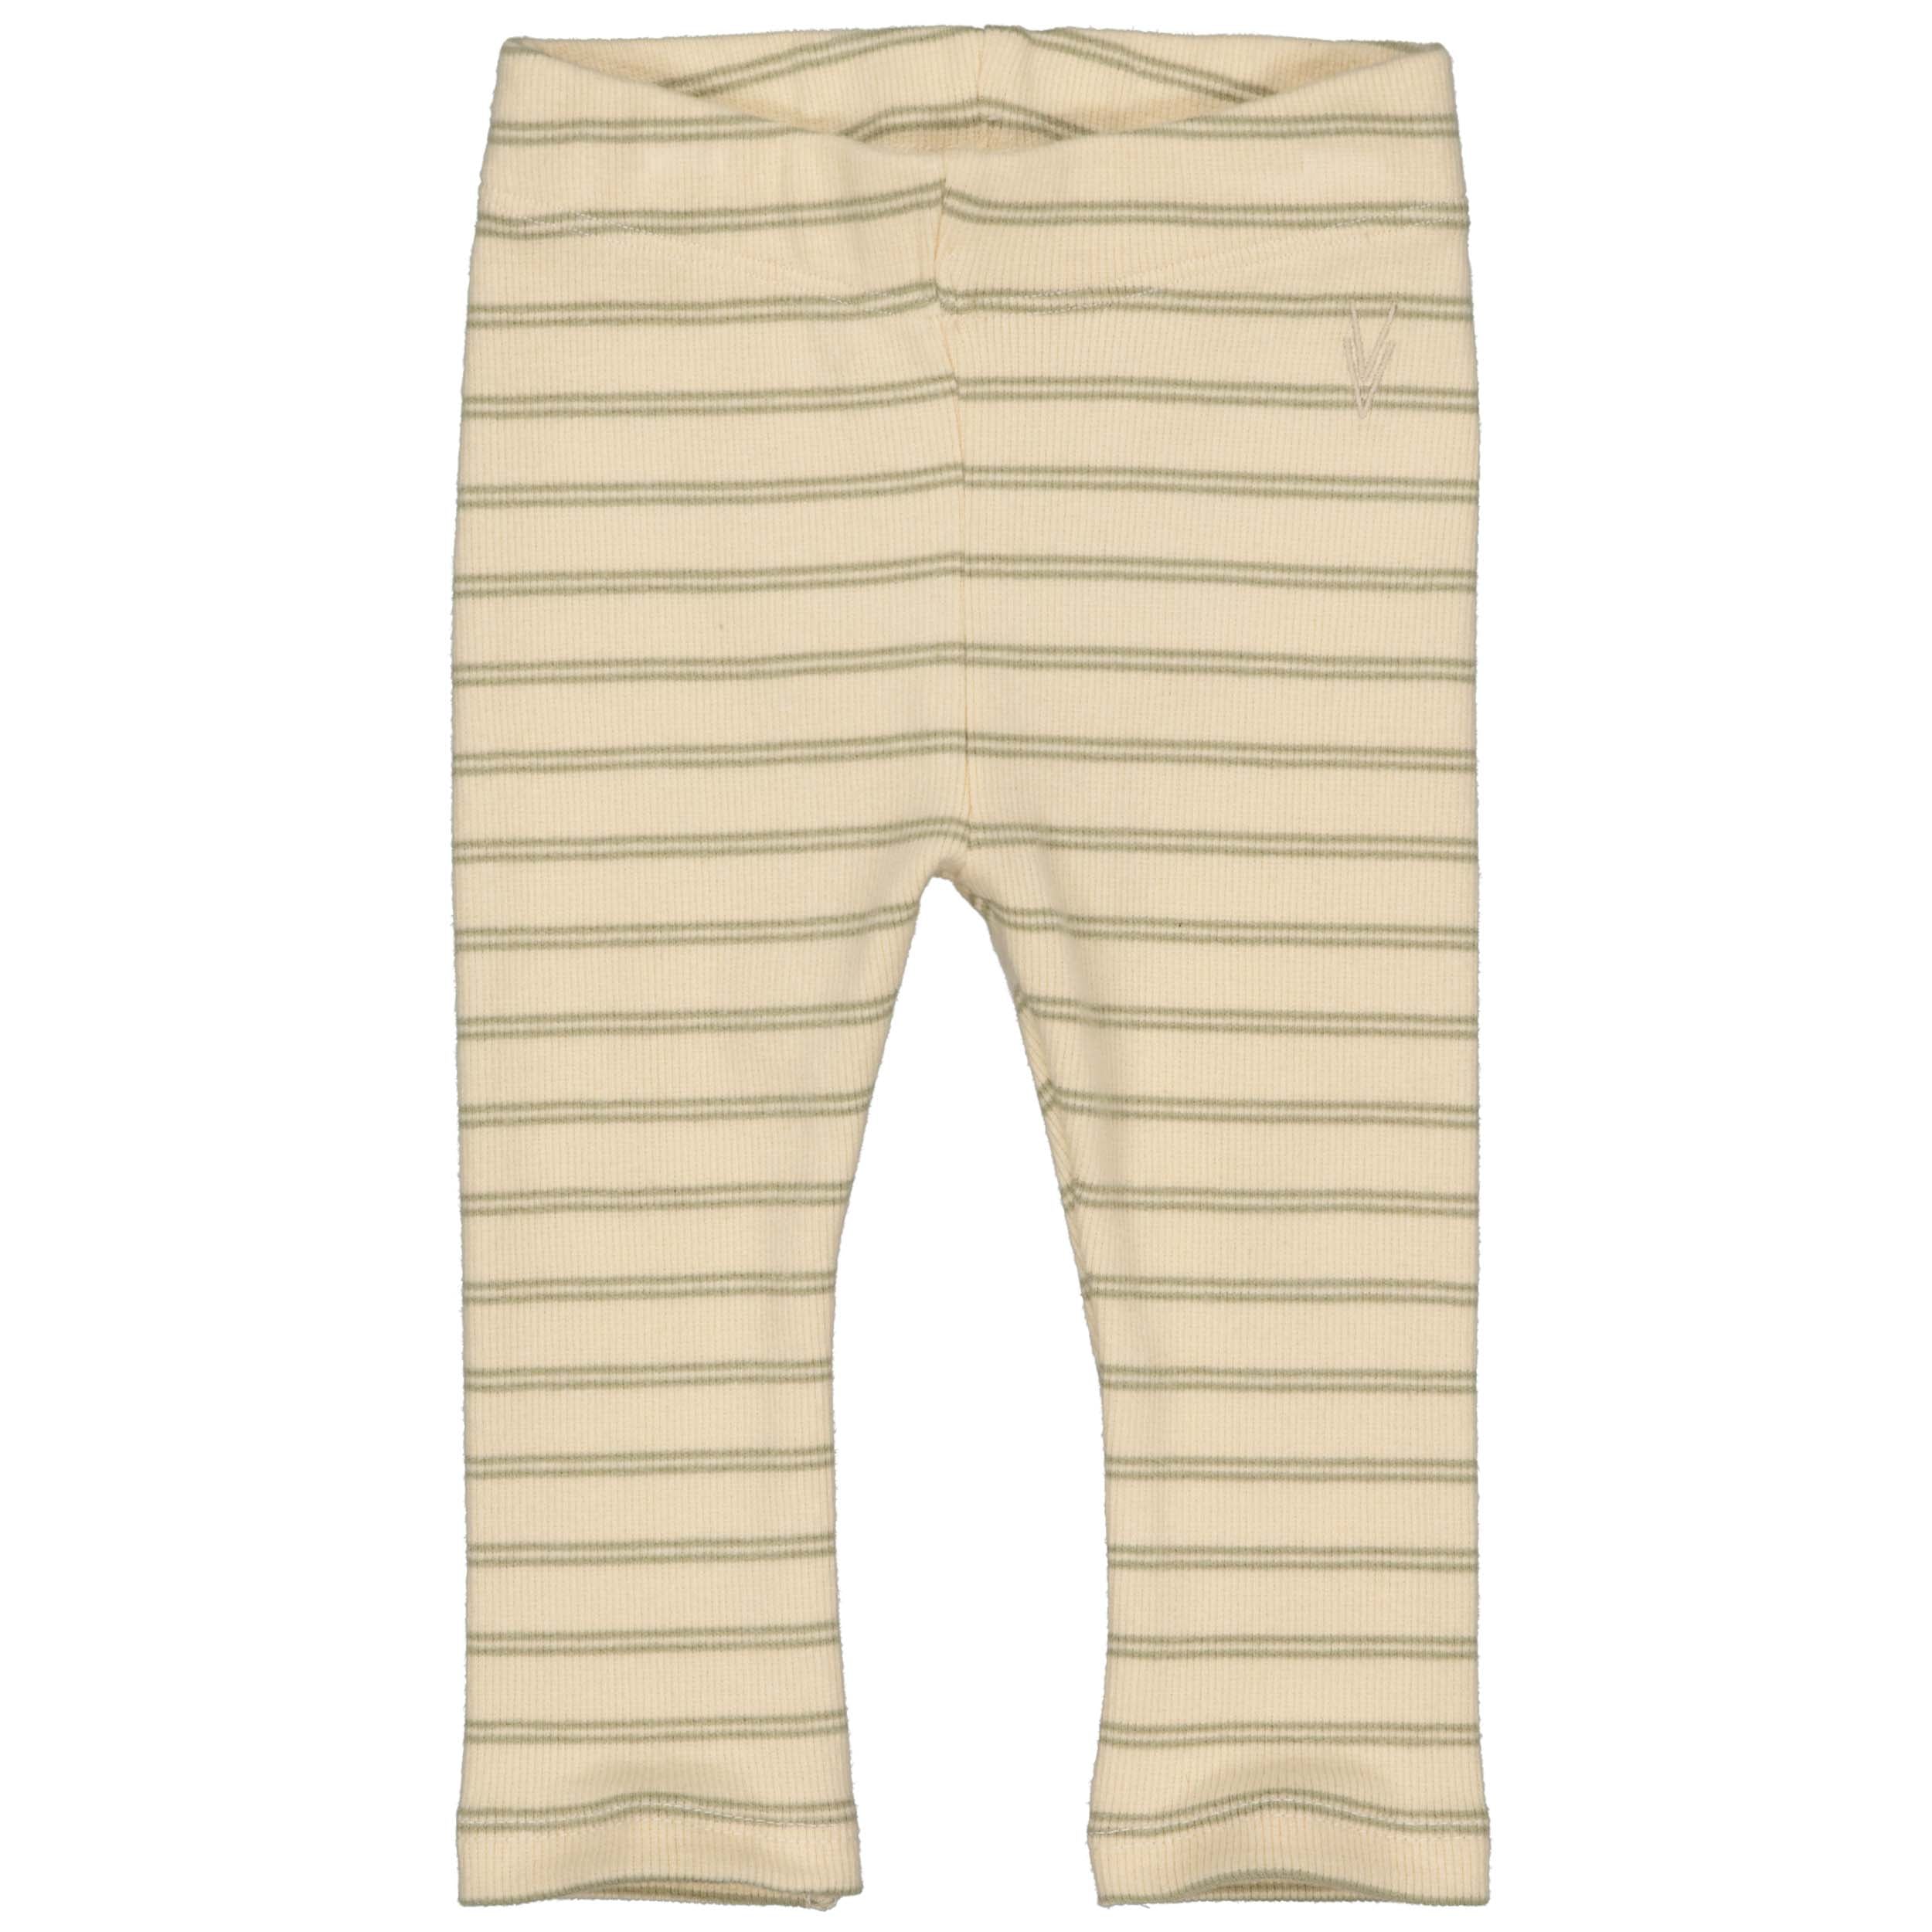 Jongens Pants FILIP van Levv Newborn in de kleur AOP Olive Stripe in maat 68.